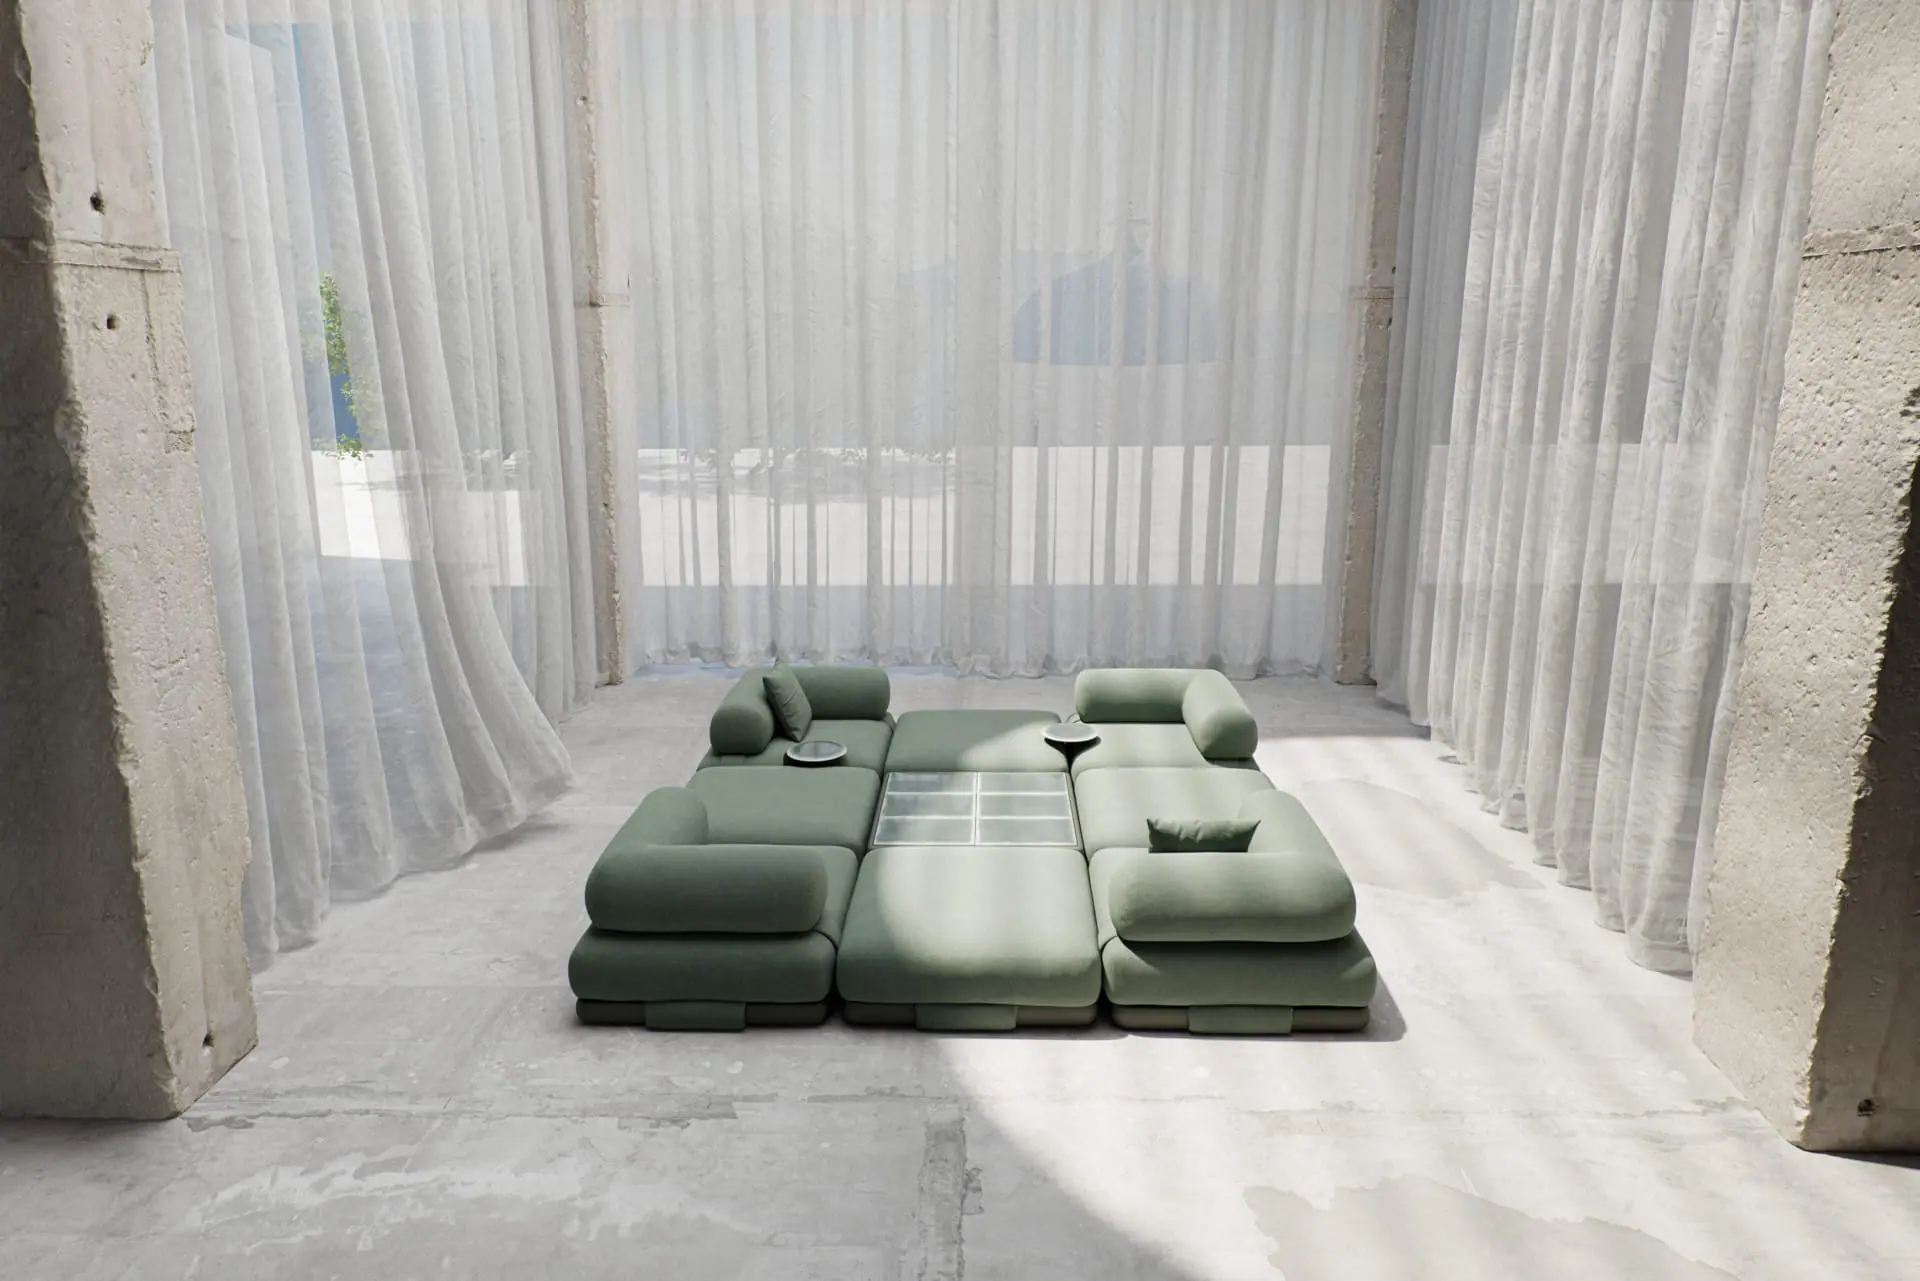 kctl_mln24_046_insula-sofa-cortinas-outdoor_final